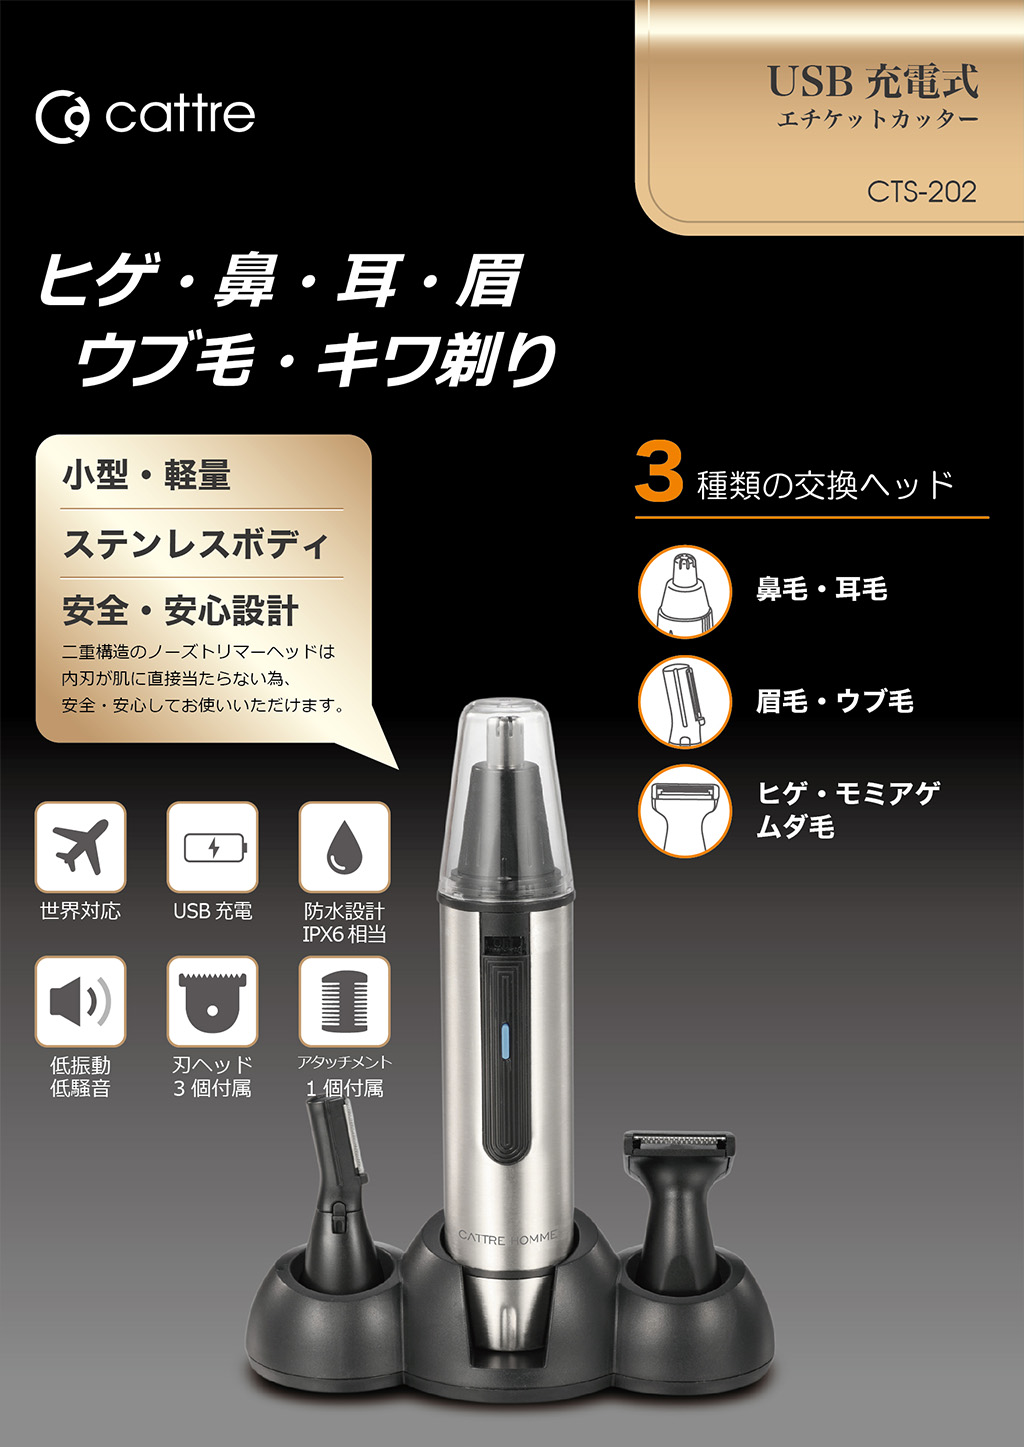 USB充電式 エチケットカッター CTS-202 | カトレ株式会社